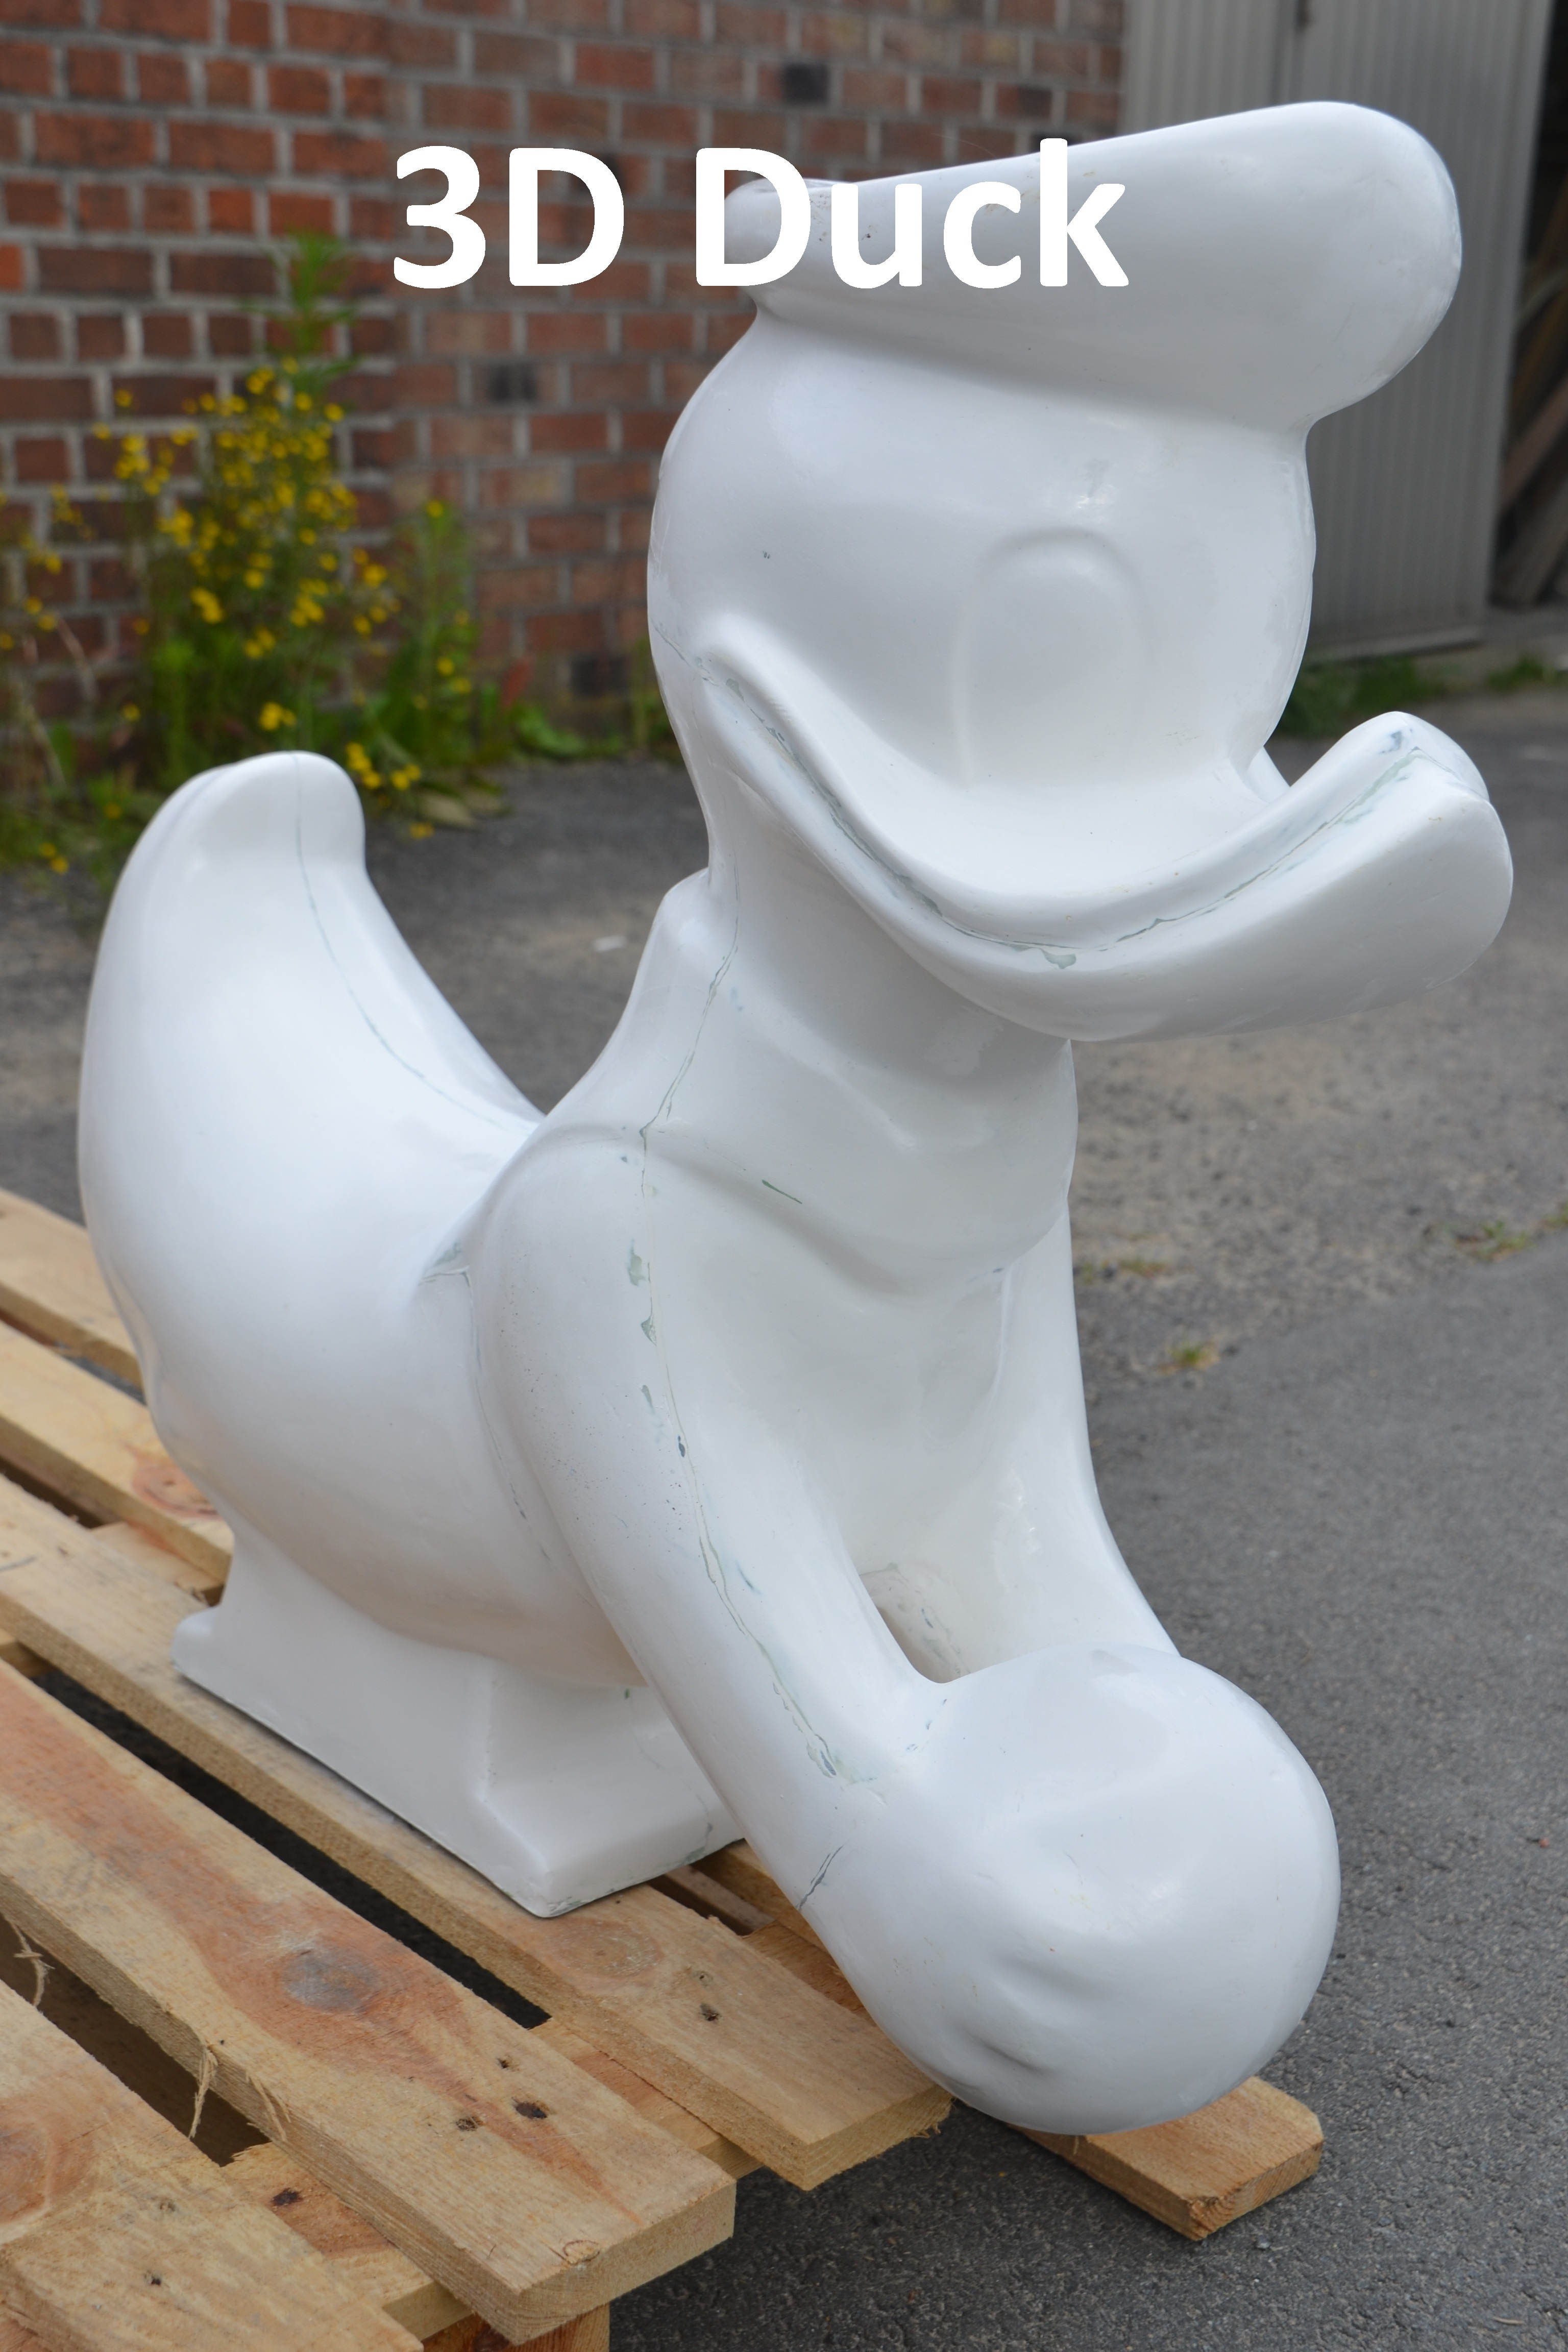 afbeelding van Donald Duck, 3D duck, 3D figures, props, blow ups, billboard, sculpture en polyester, parc d'attraction